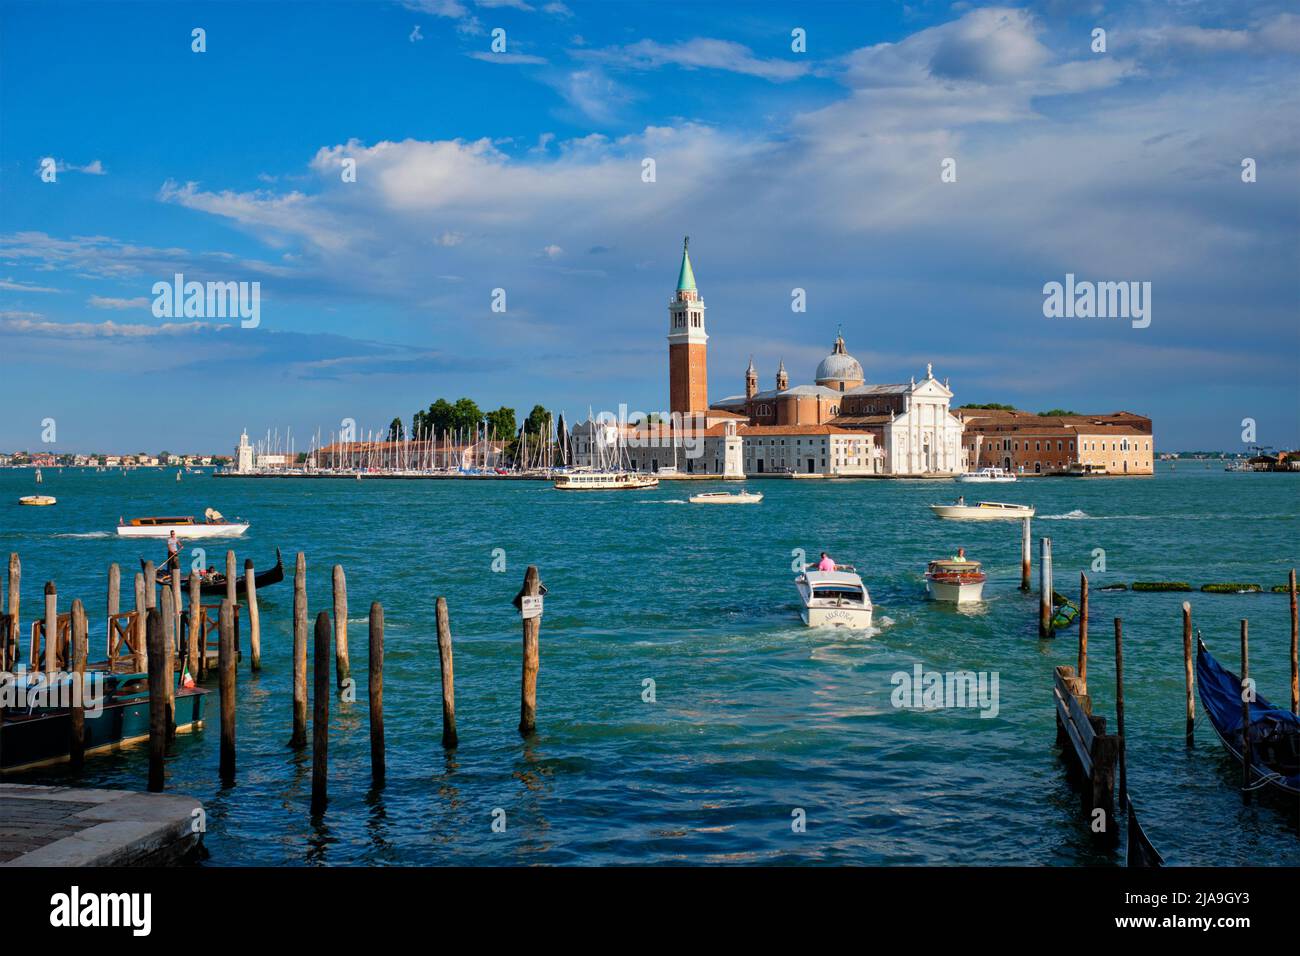 VENICE, ITALY - JUNE 27, 2018: Taxi boats in the lagoon of Venice by Saint Mark (San Marco) square with San Giorgio di Maggiore church in background i Stock Photo